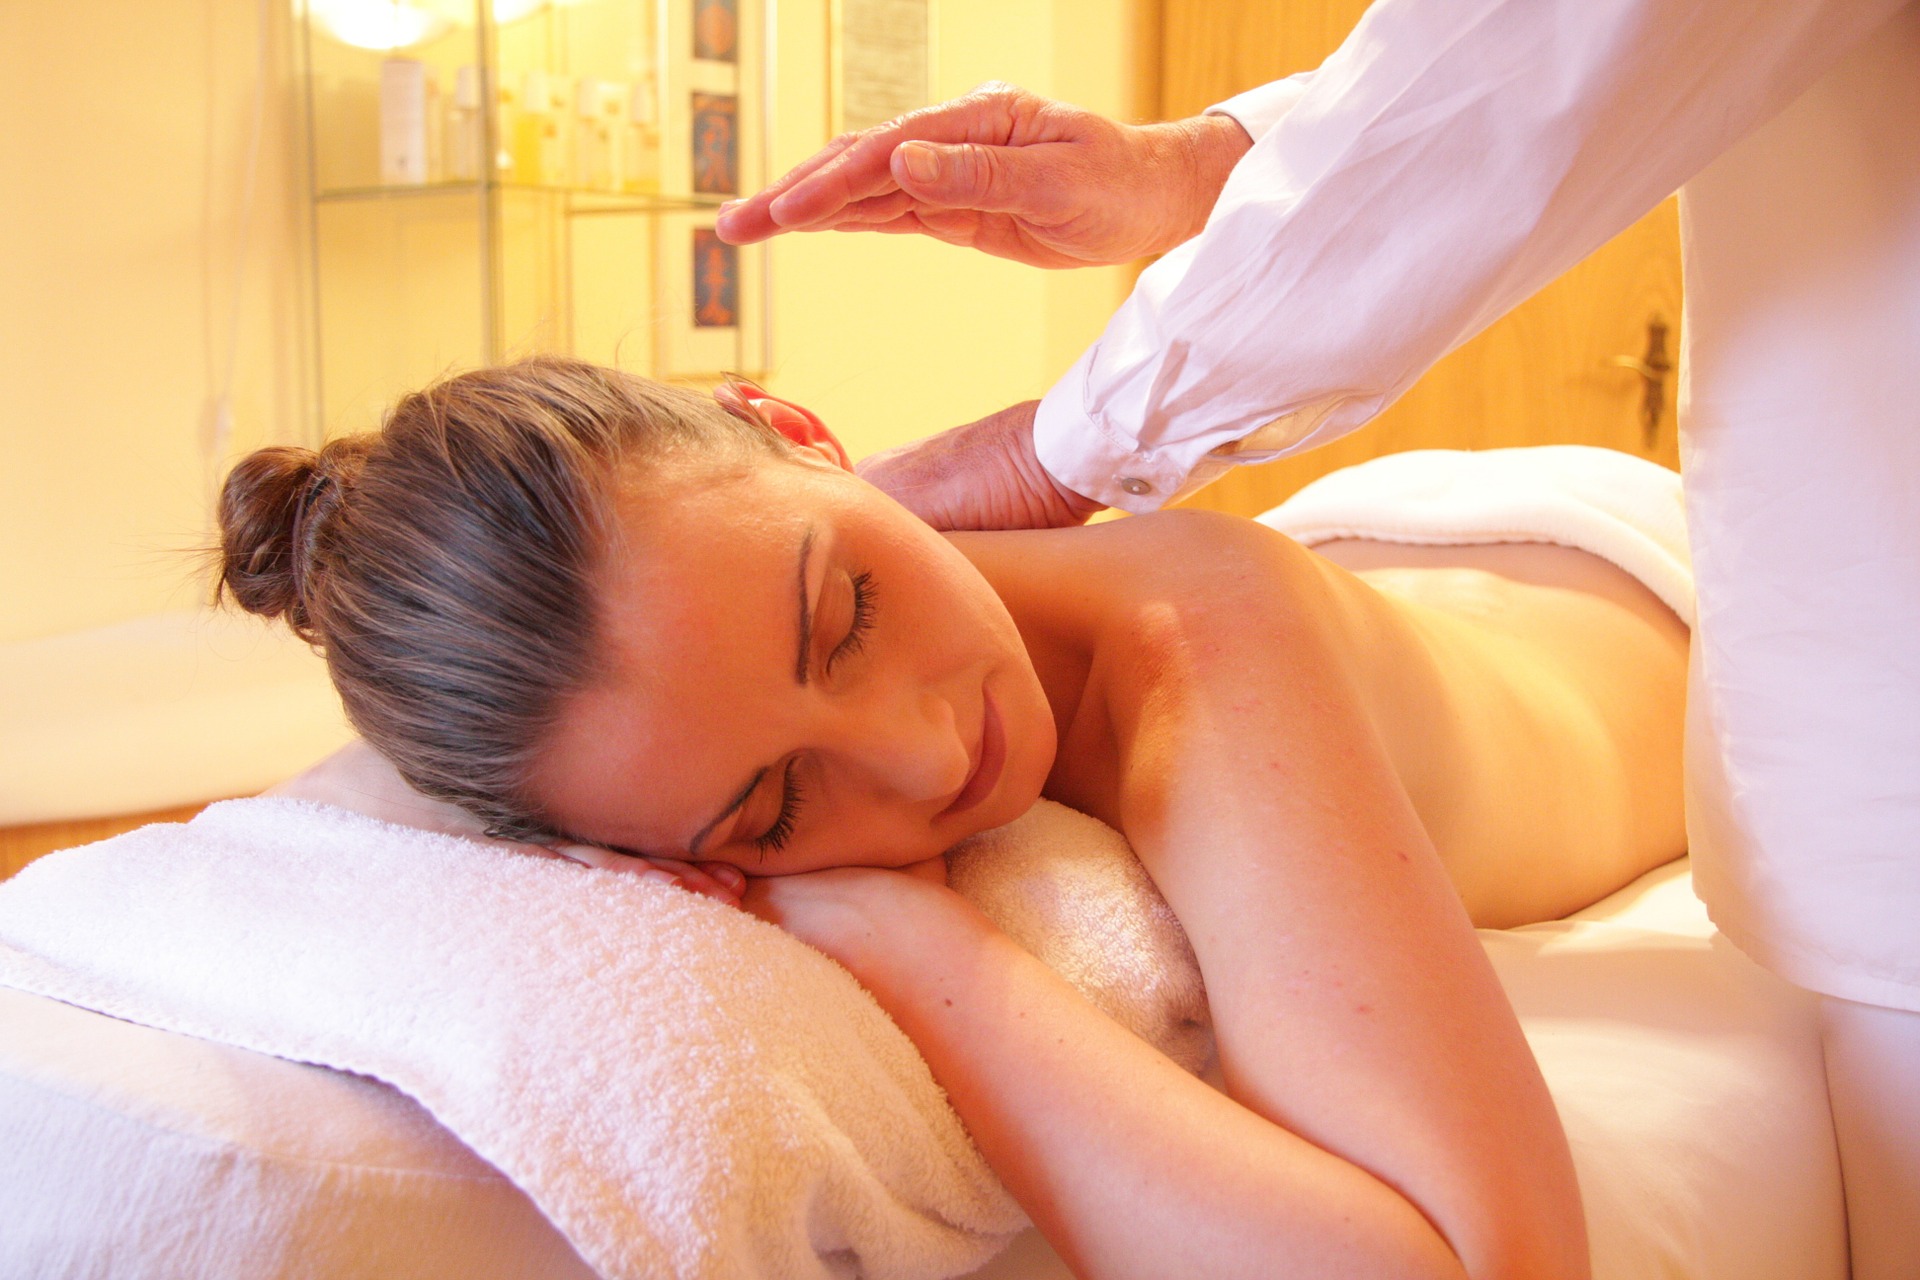  A woman being massaged 